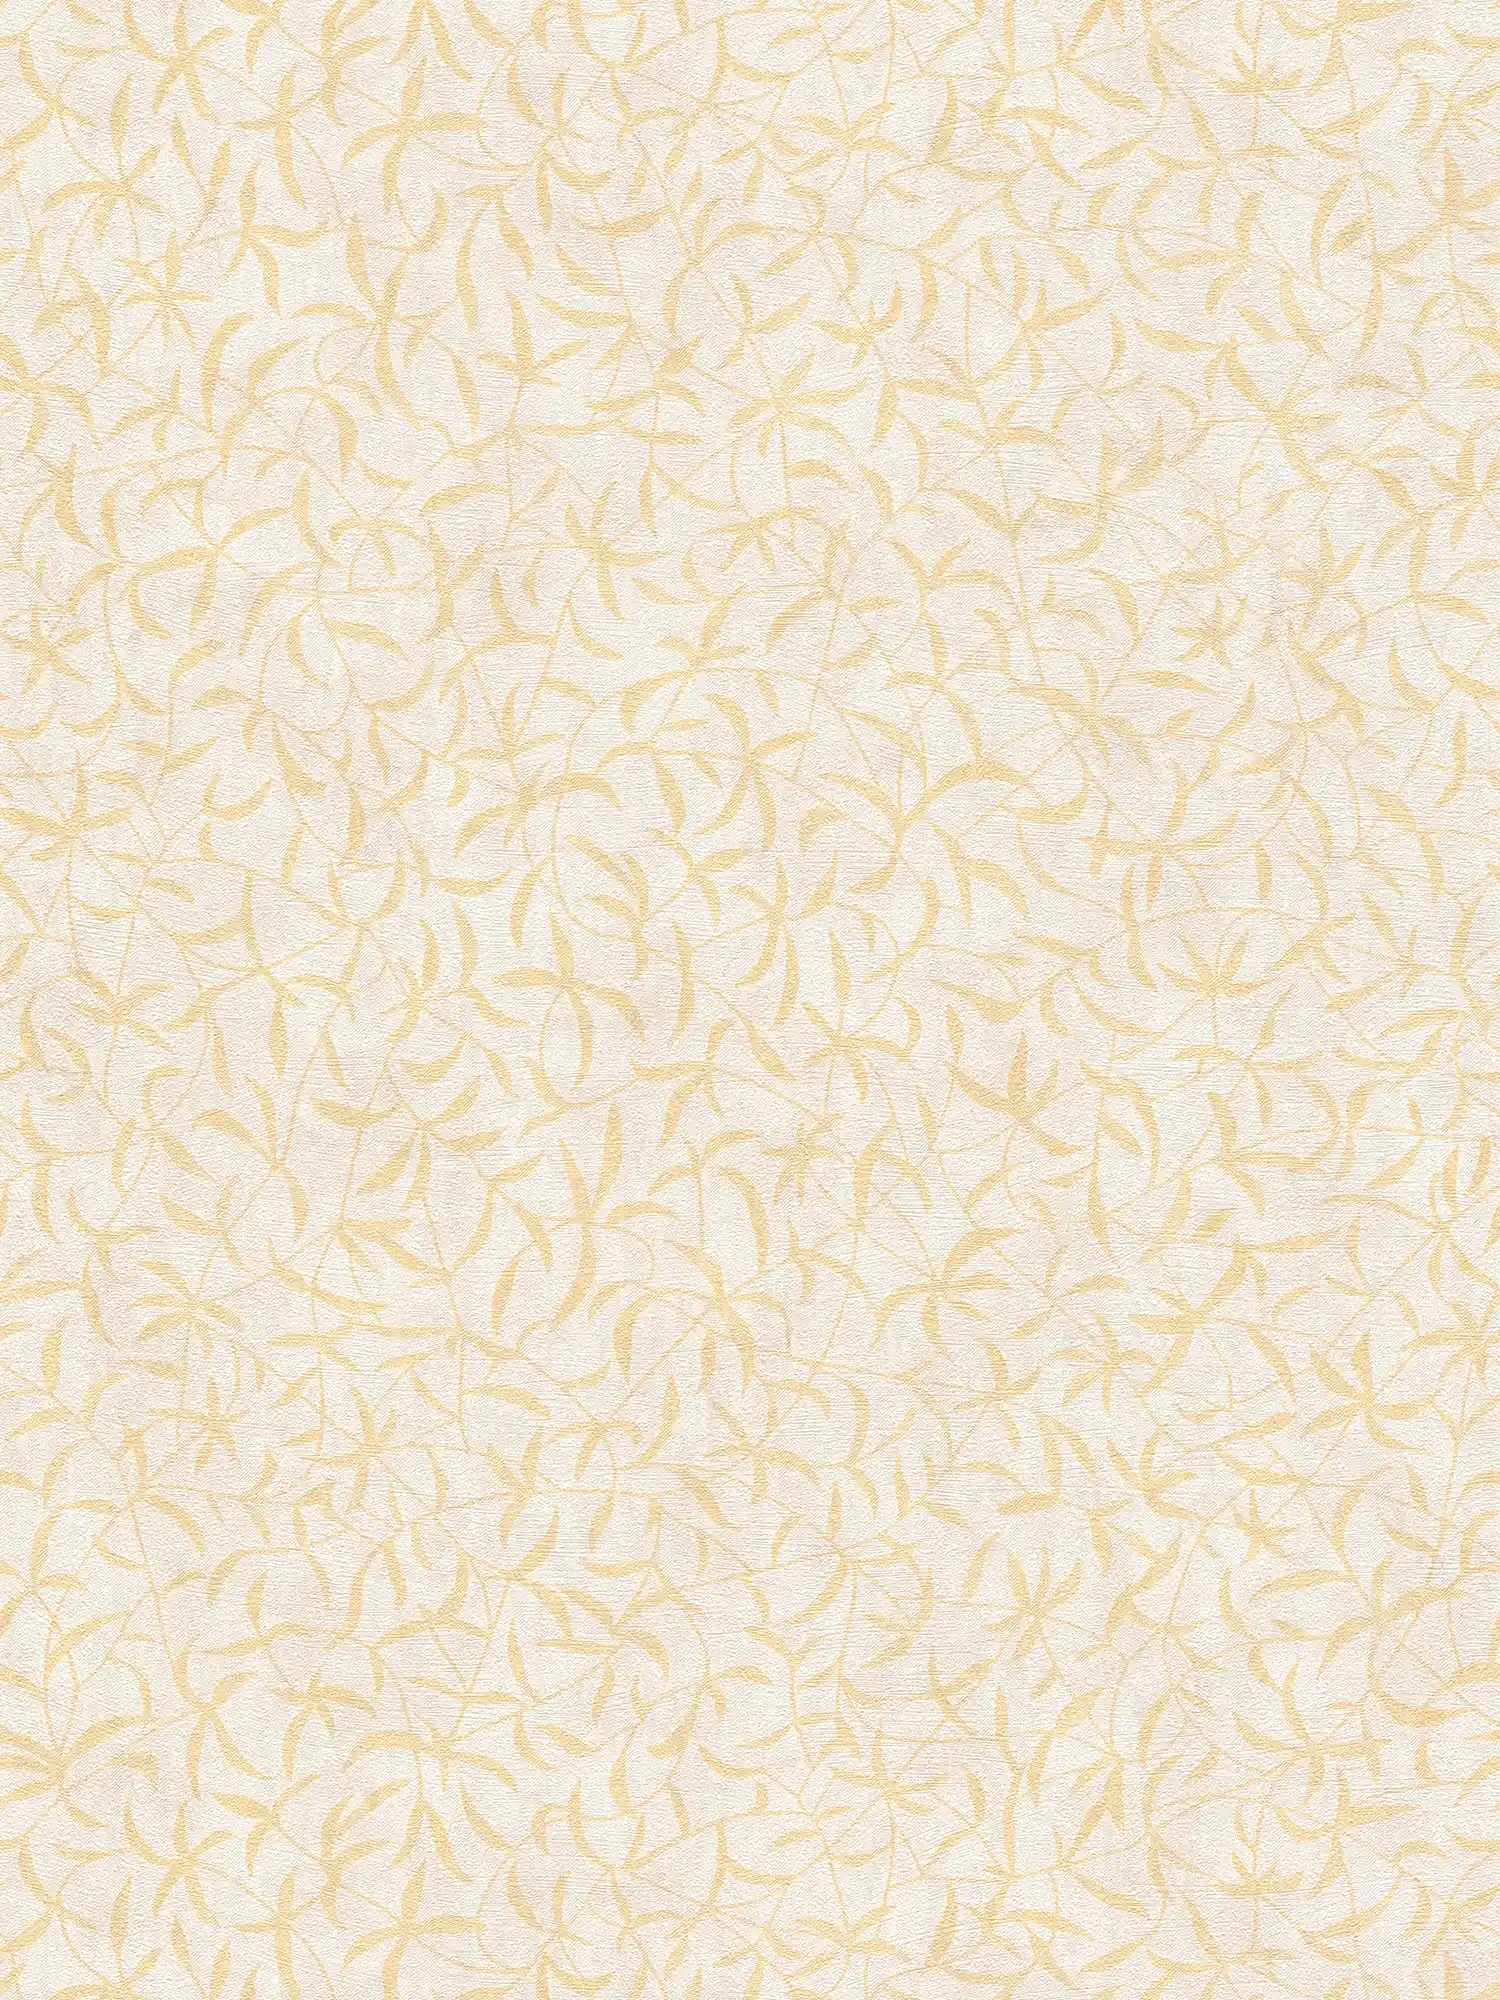 Carta da parati in tessuto non tessuto con rami e fiori - crema, beige, giallo
